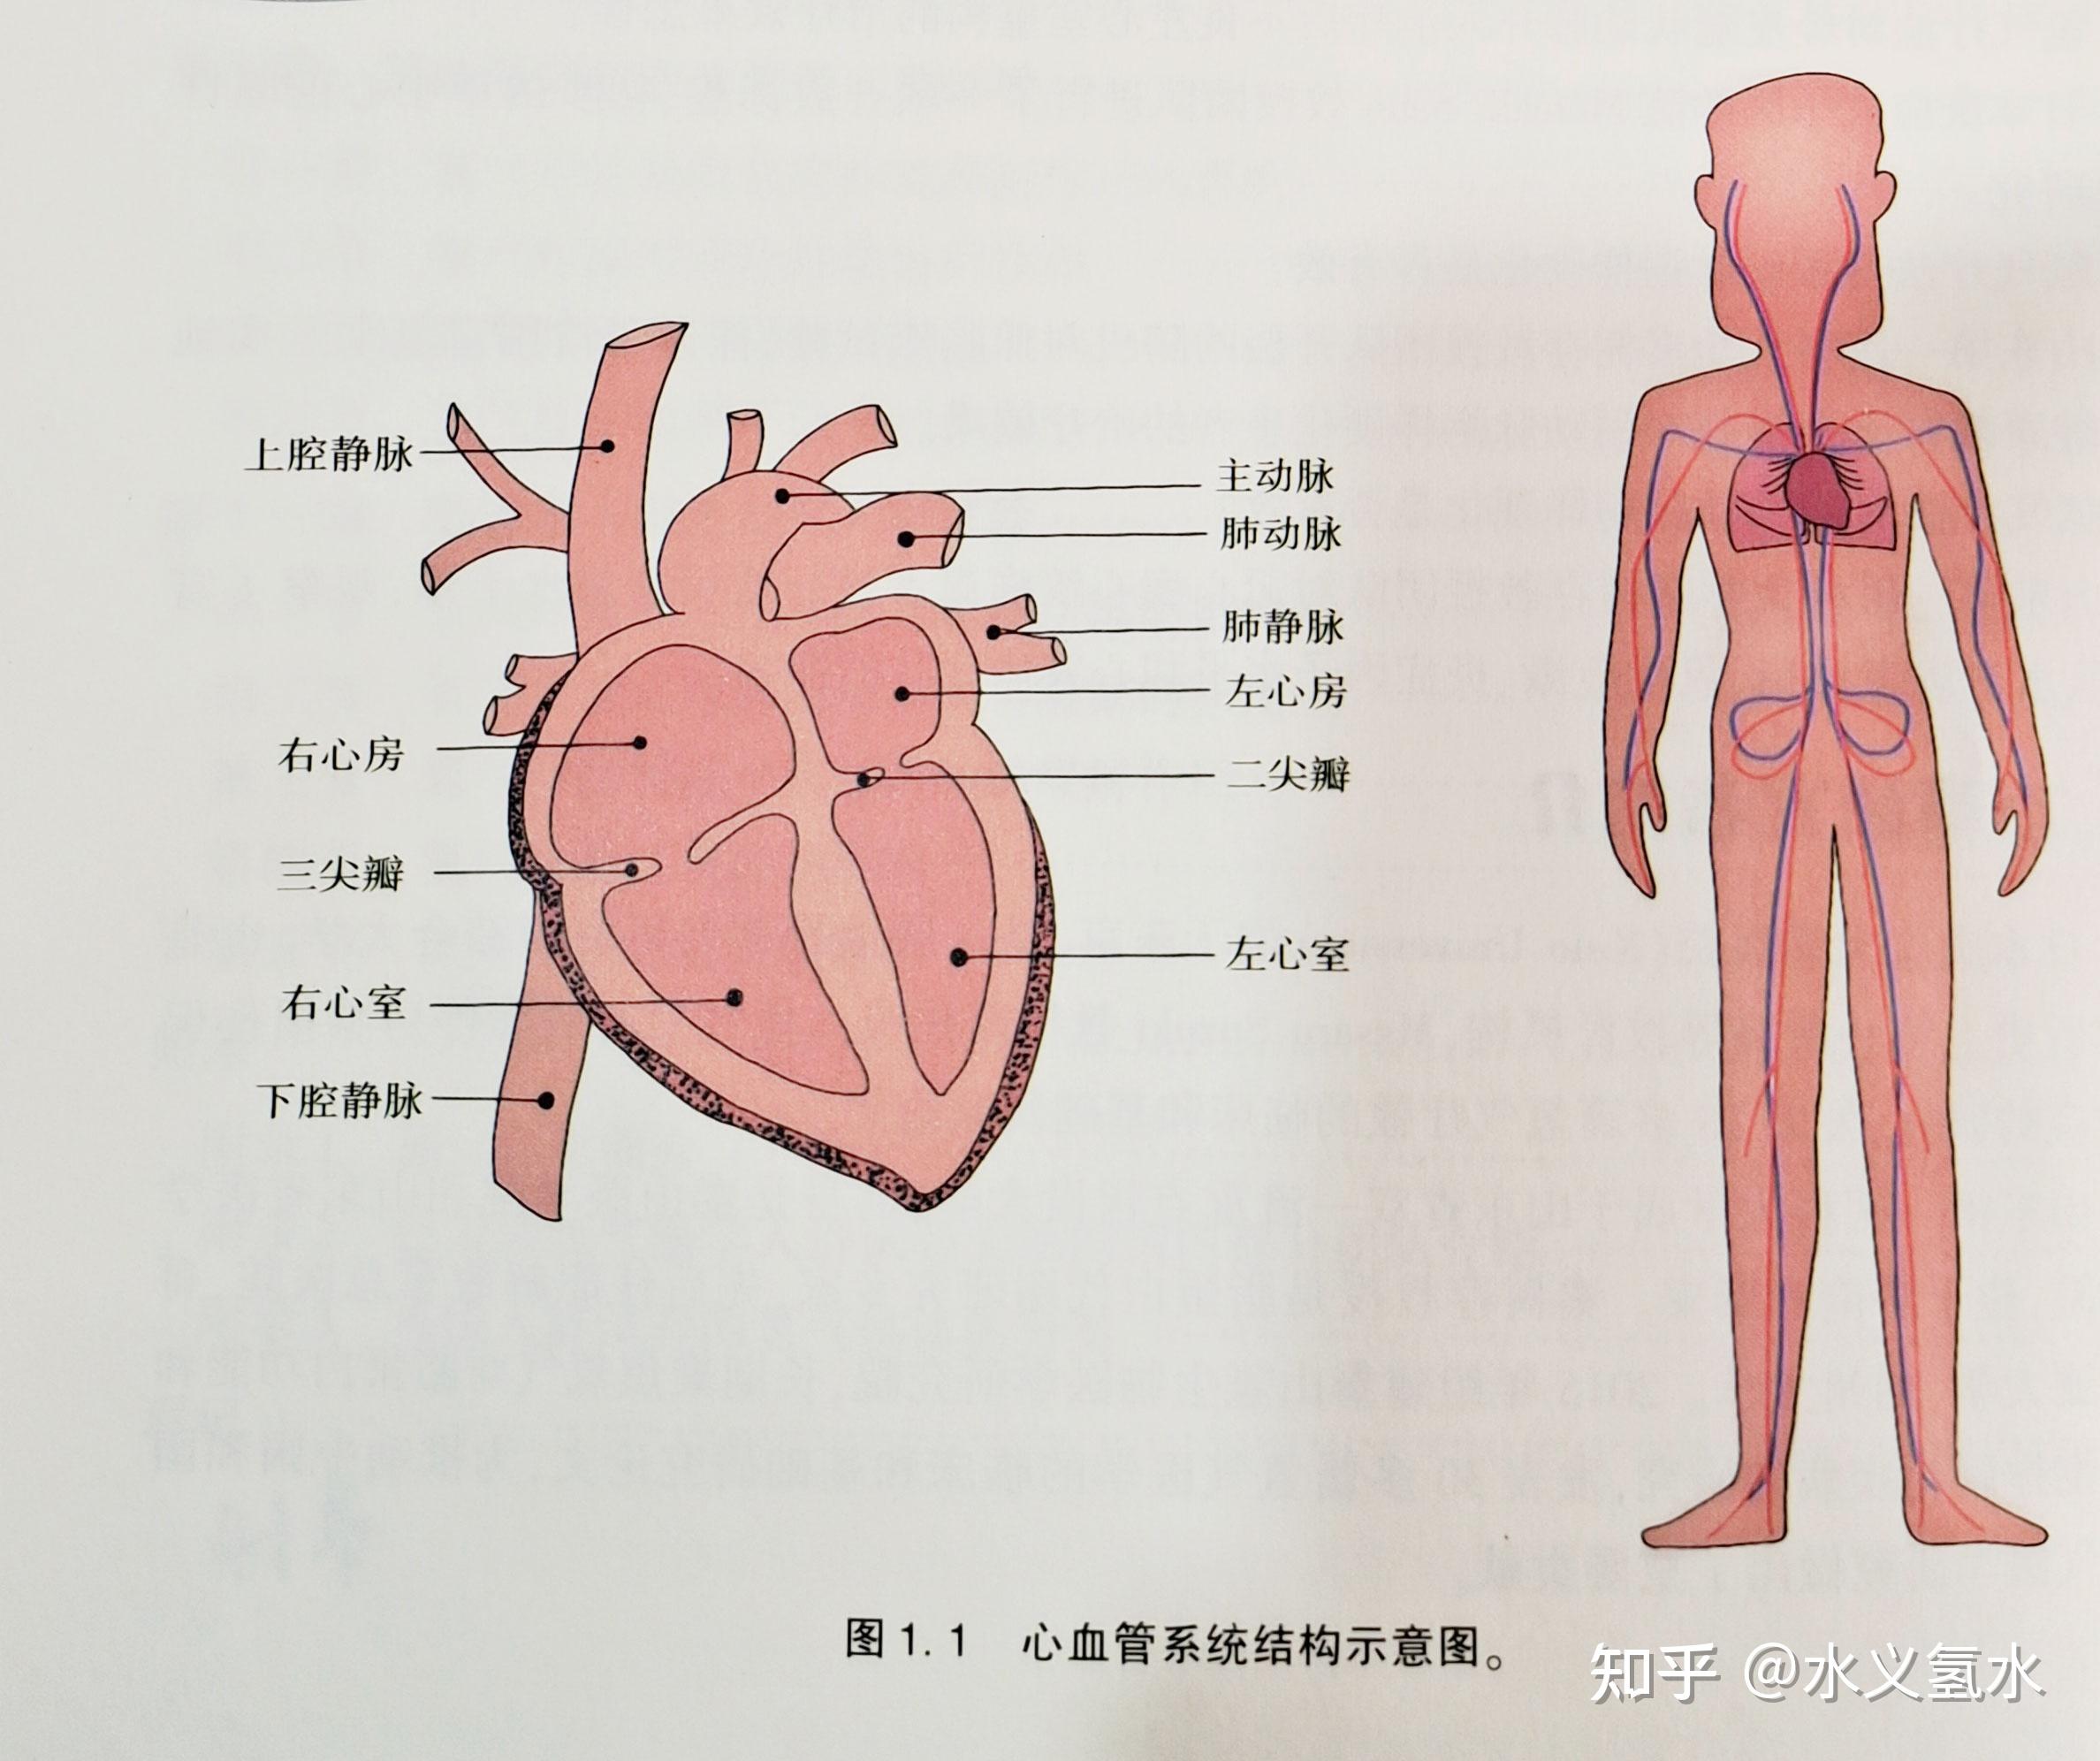 人类的心血管系统是一个密闭的管道系统,由心嗪血管组成